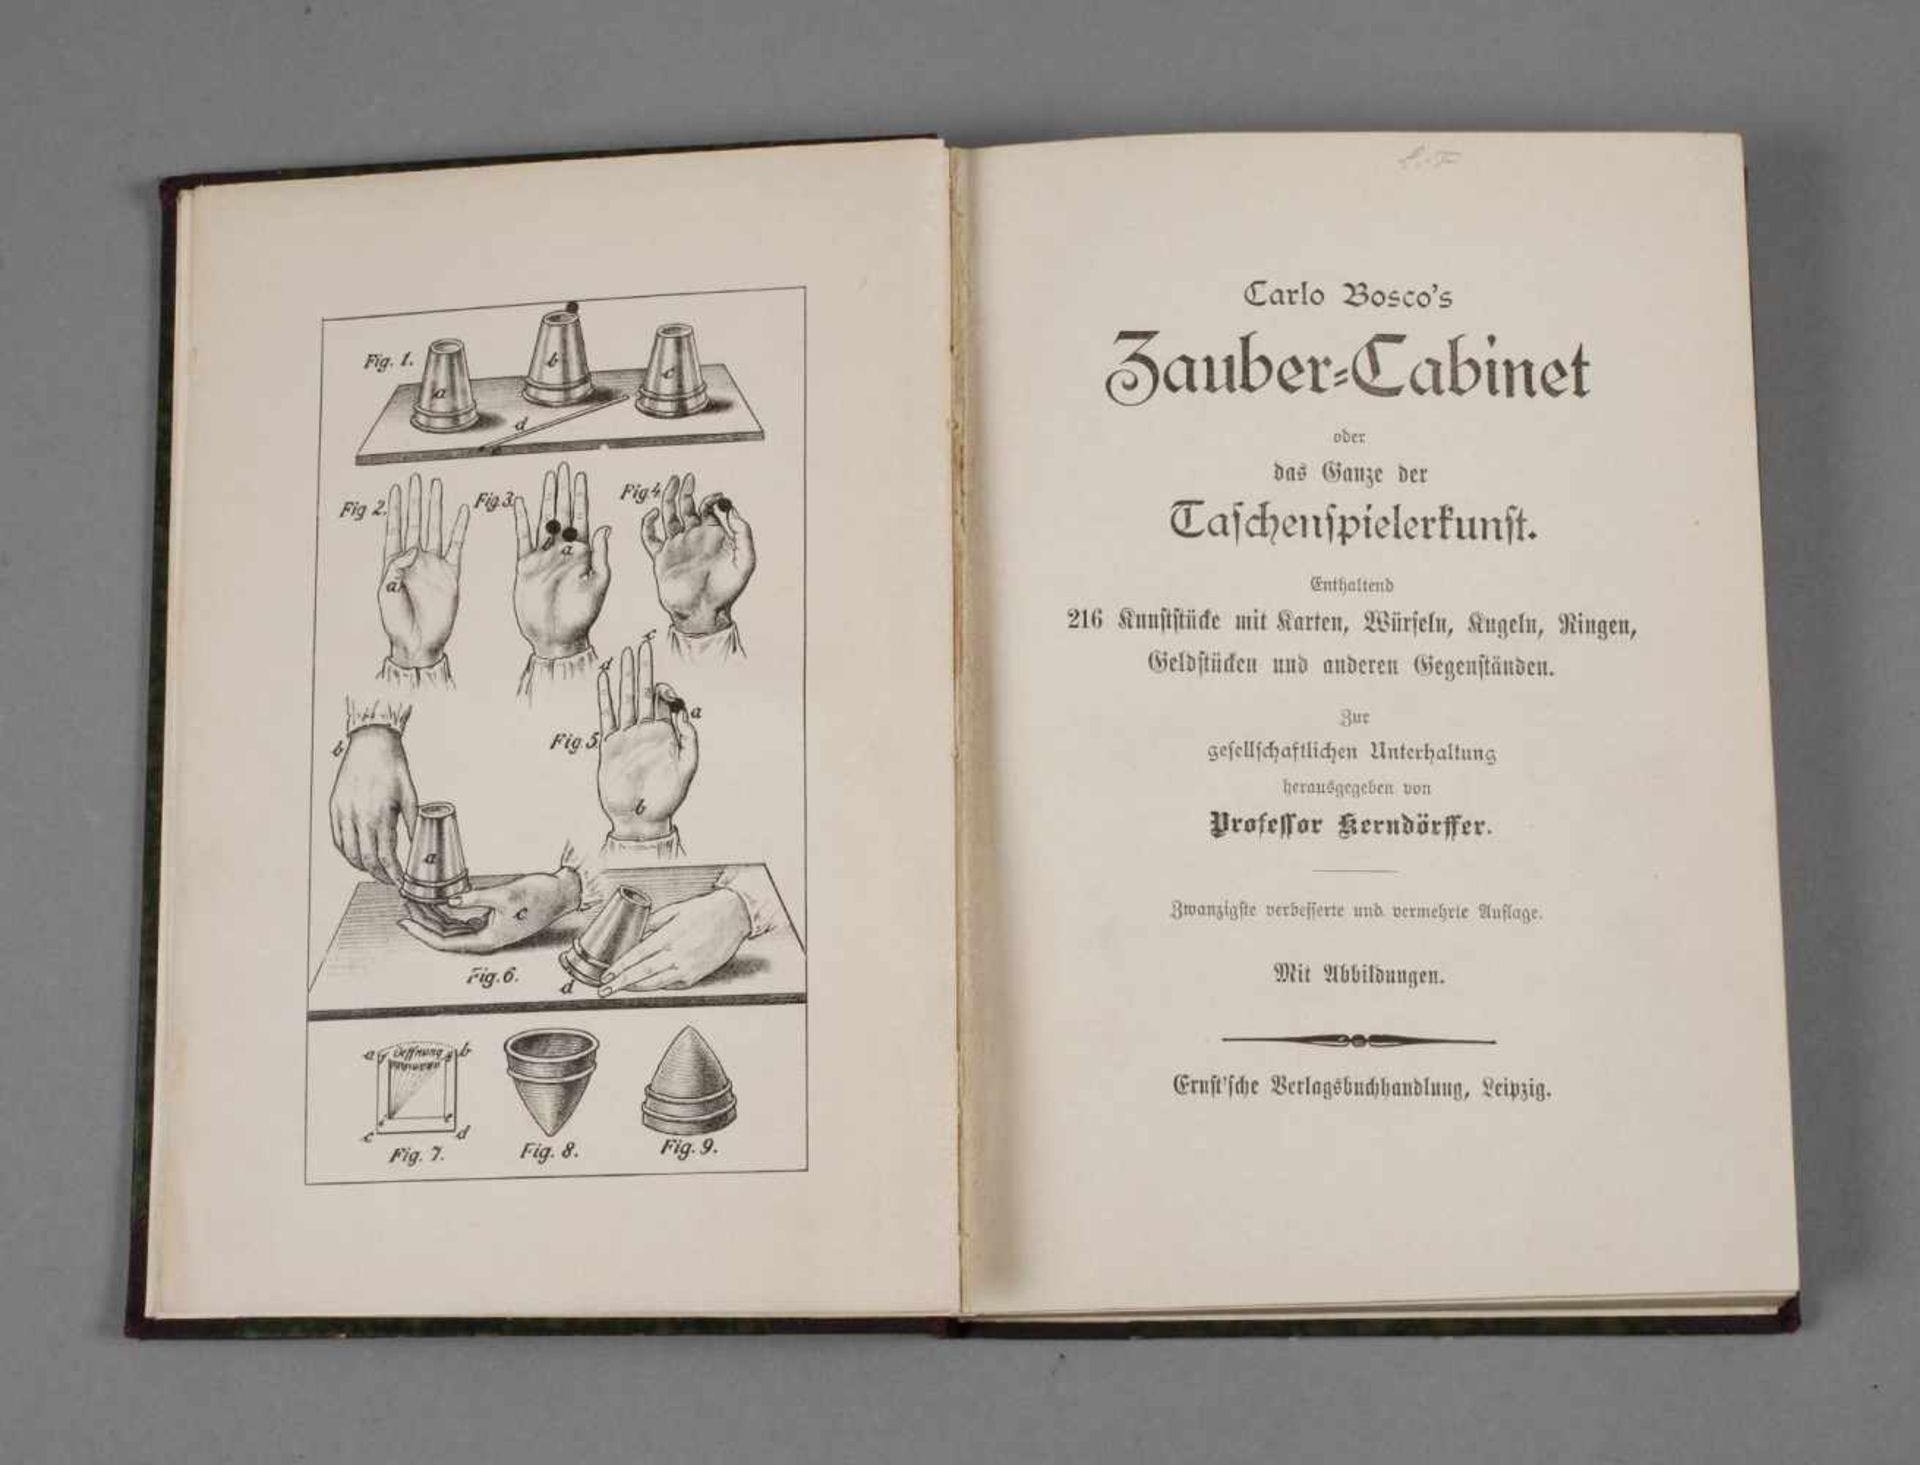 Carlo Bosco's Zauber-Cabinetoder das Ganze der Taschenspielerkunst, enthaltend 216 Kunststücke mit